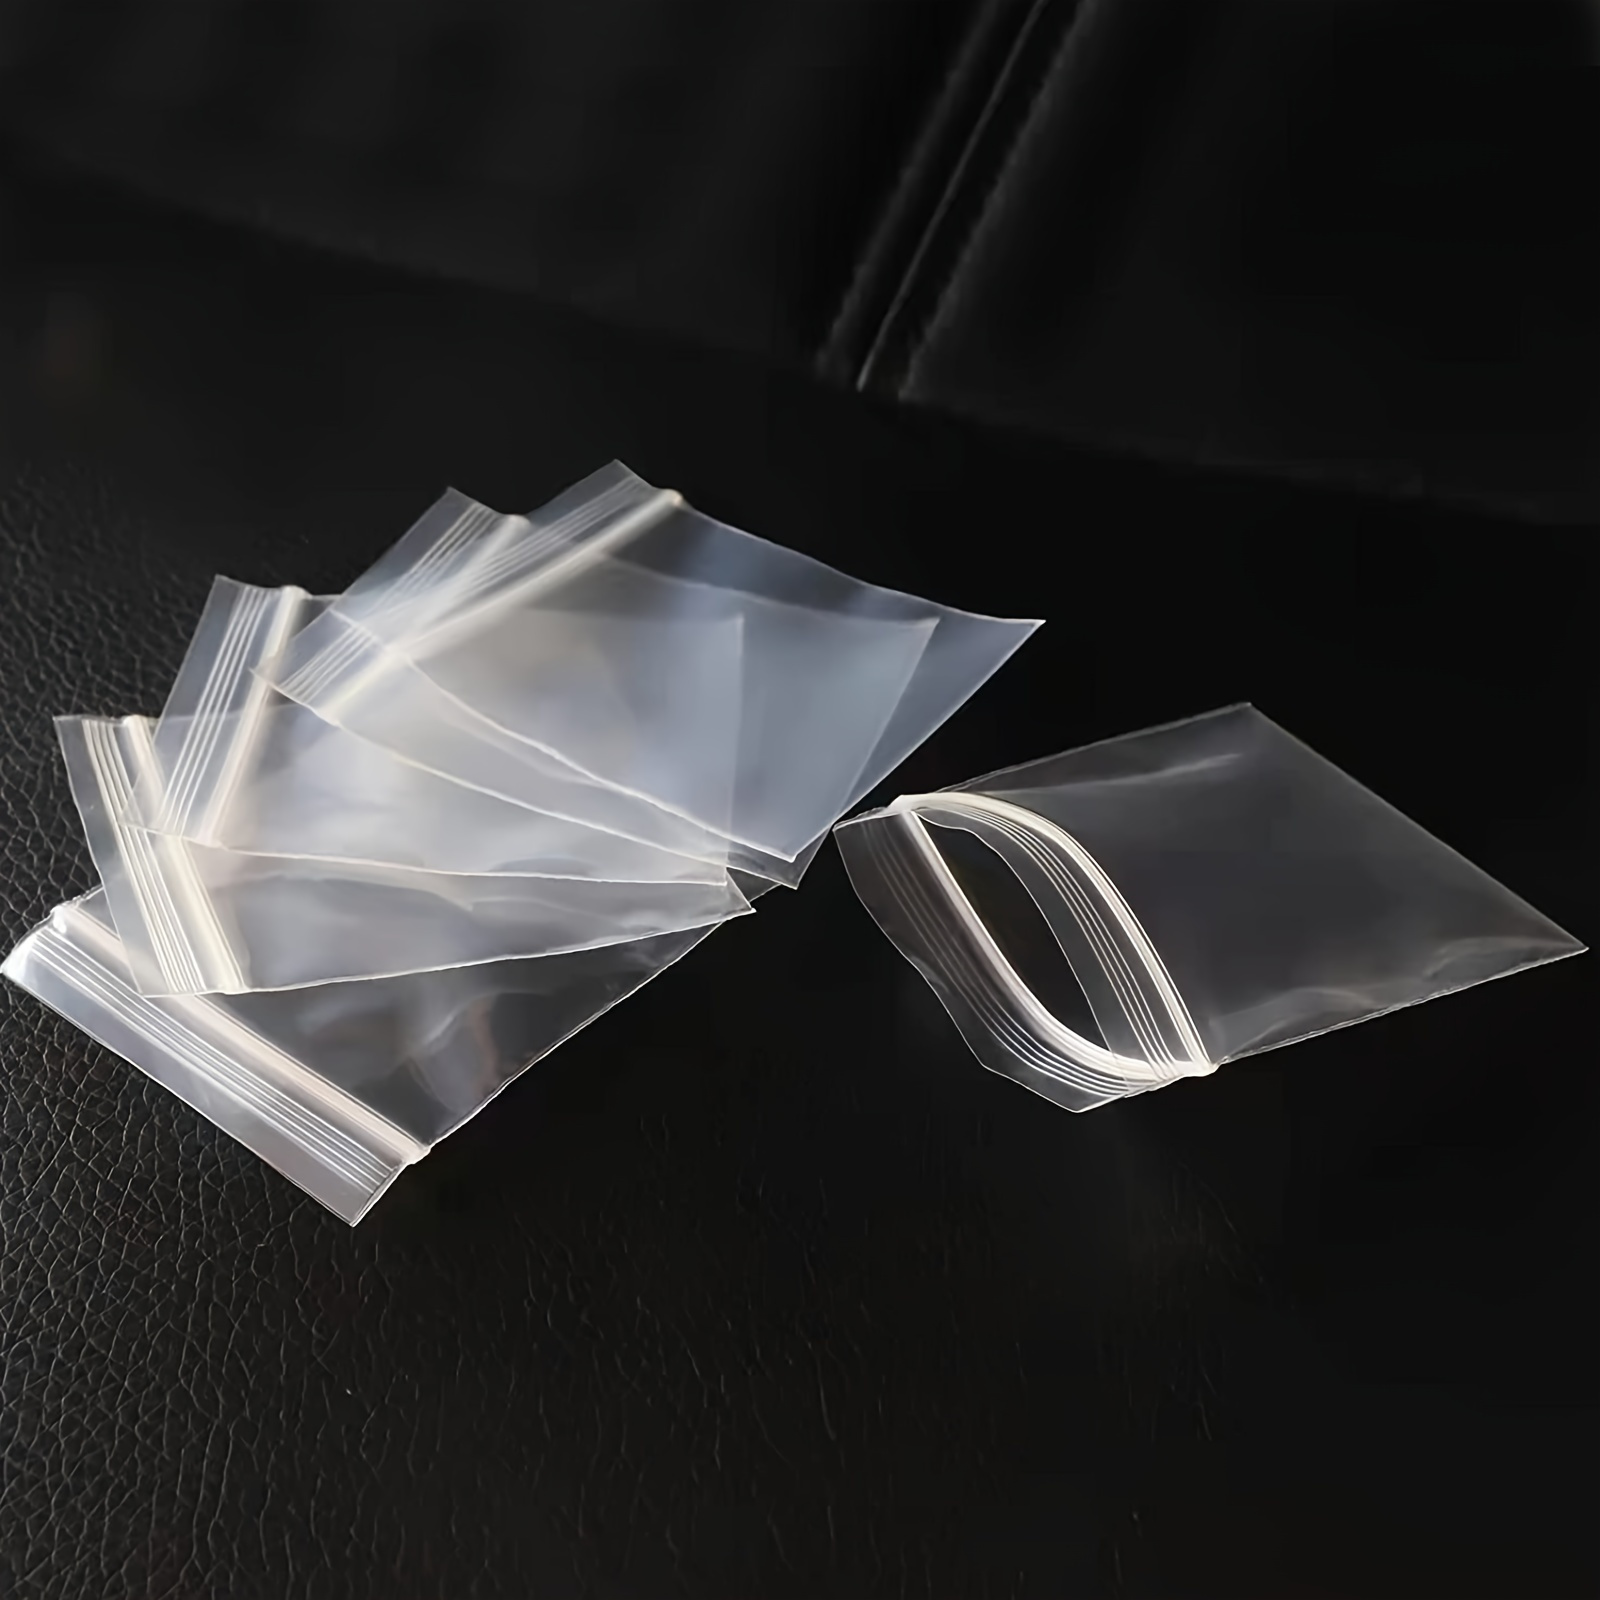 Sacchetti di plastica richiudibili con chiusura a cerniera in polietilene  richiudibili da 100 pezzi - AliExpress